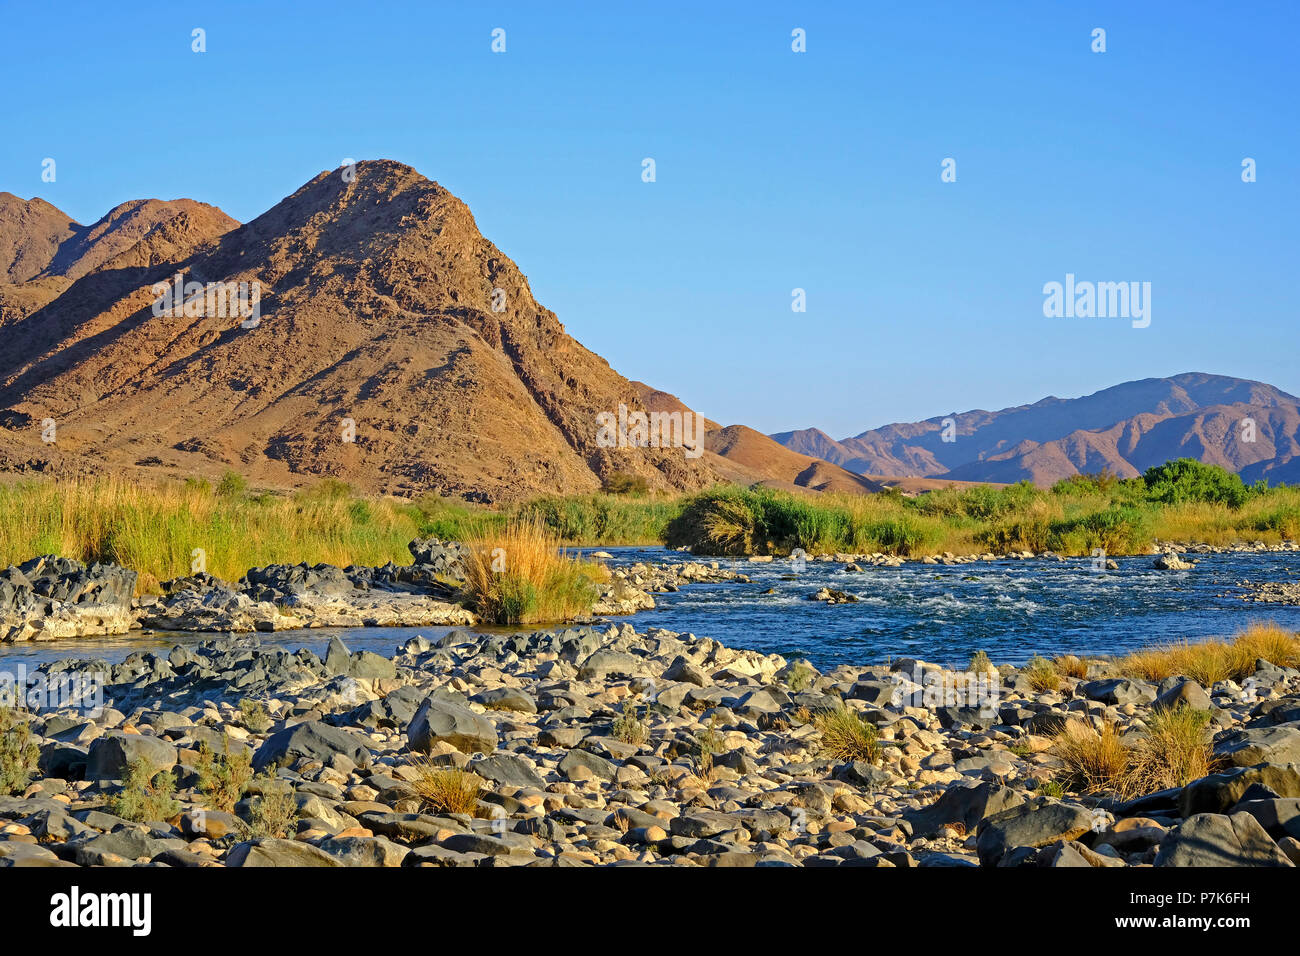 Pedregoso cauce del río Orange / Oranjerivier (borde río) en Richtersveld, lado opuesto de Namibia, Namaqua, Sudáfrica Foto de stock